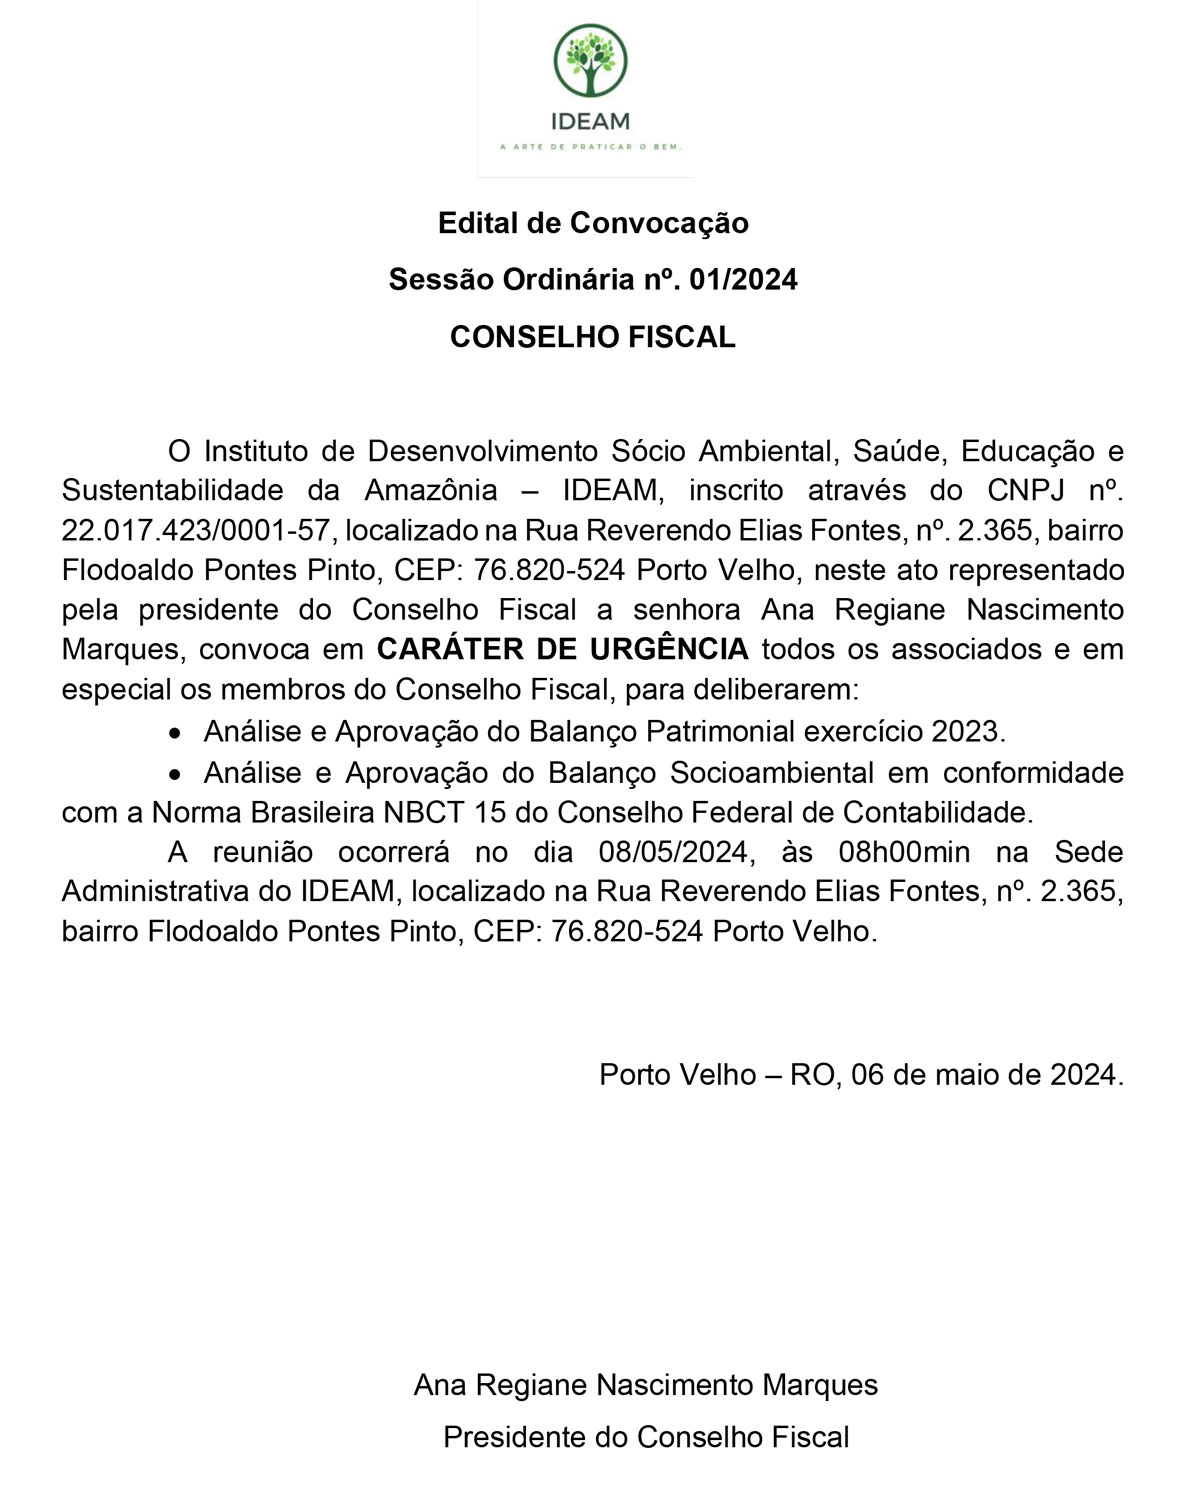 Edital de Convocação - AGO - Sessão Ordinária 01/2024: IDEAM - News Rondônia